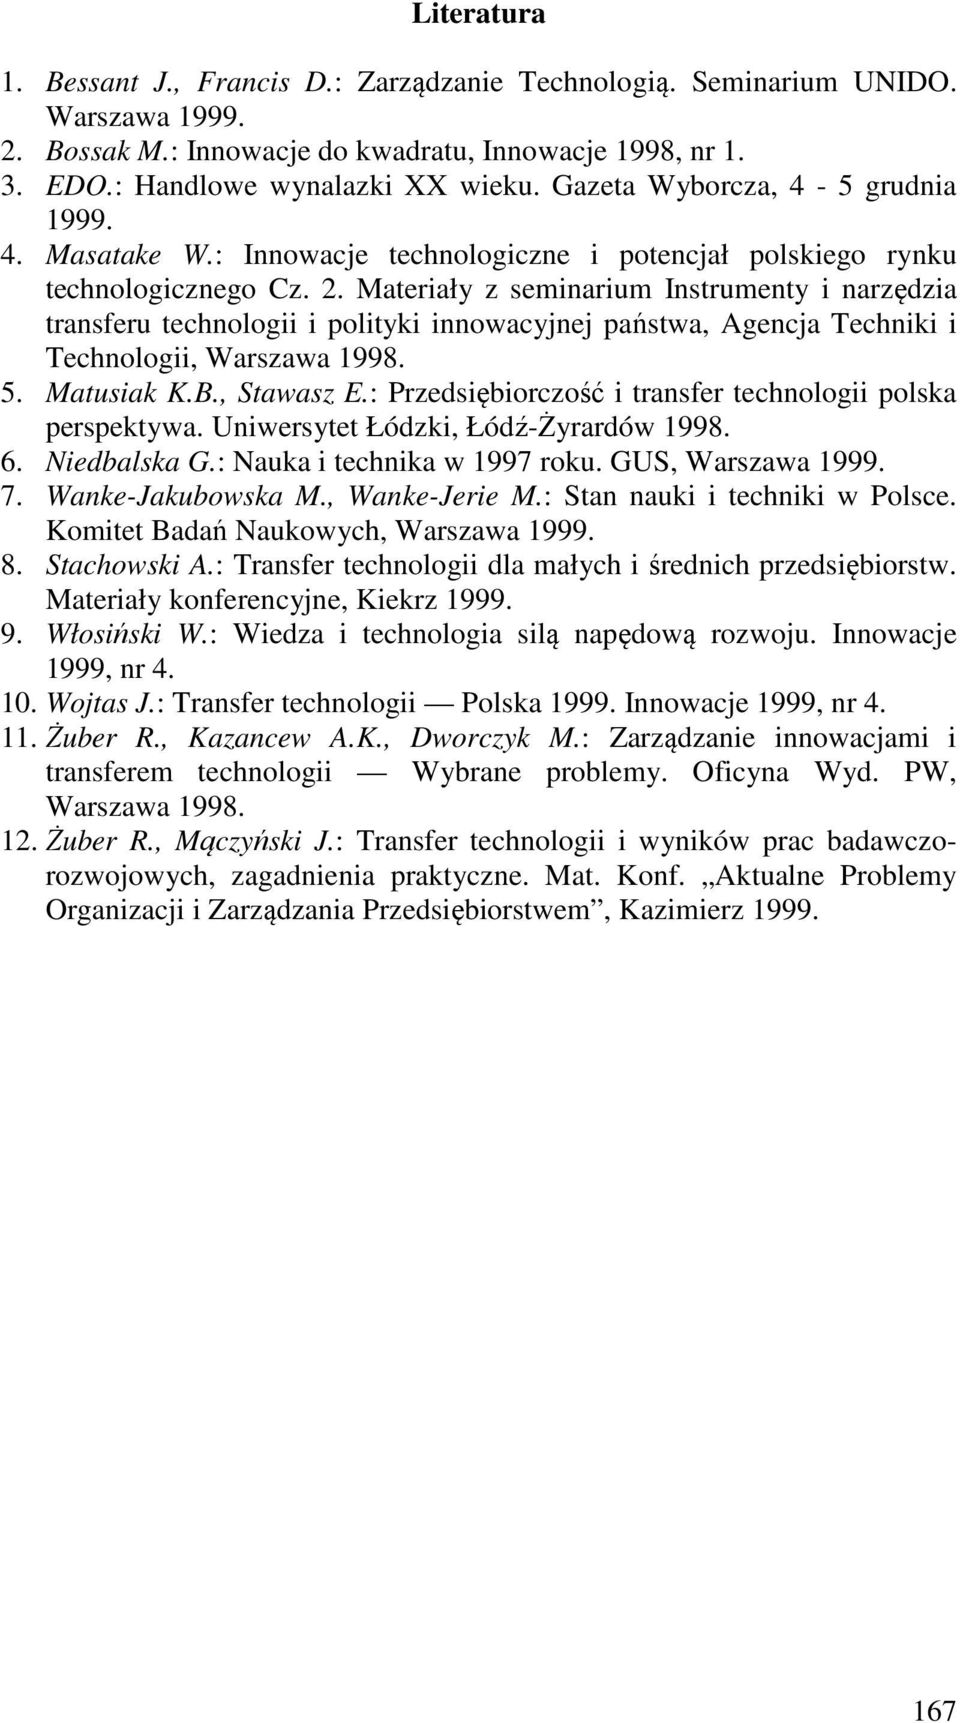 Materiały z seminarium Instrumenty i narzędzia transferu technologii i polityki innowacyjnej państwa, Agencja Techniki i Technologii, Warszawa 1998. 5. Matusiak K.B., Stawasz E.